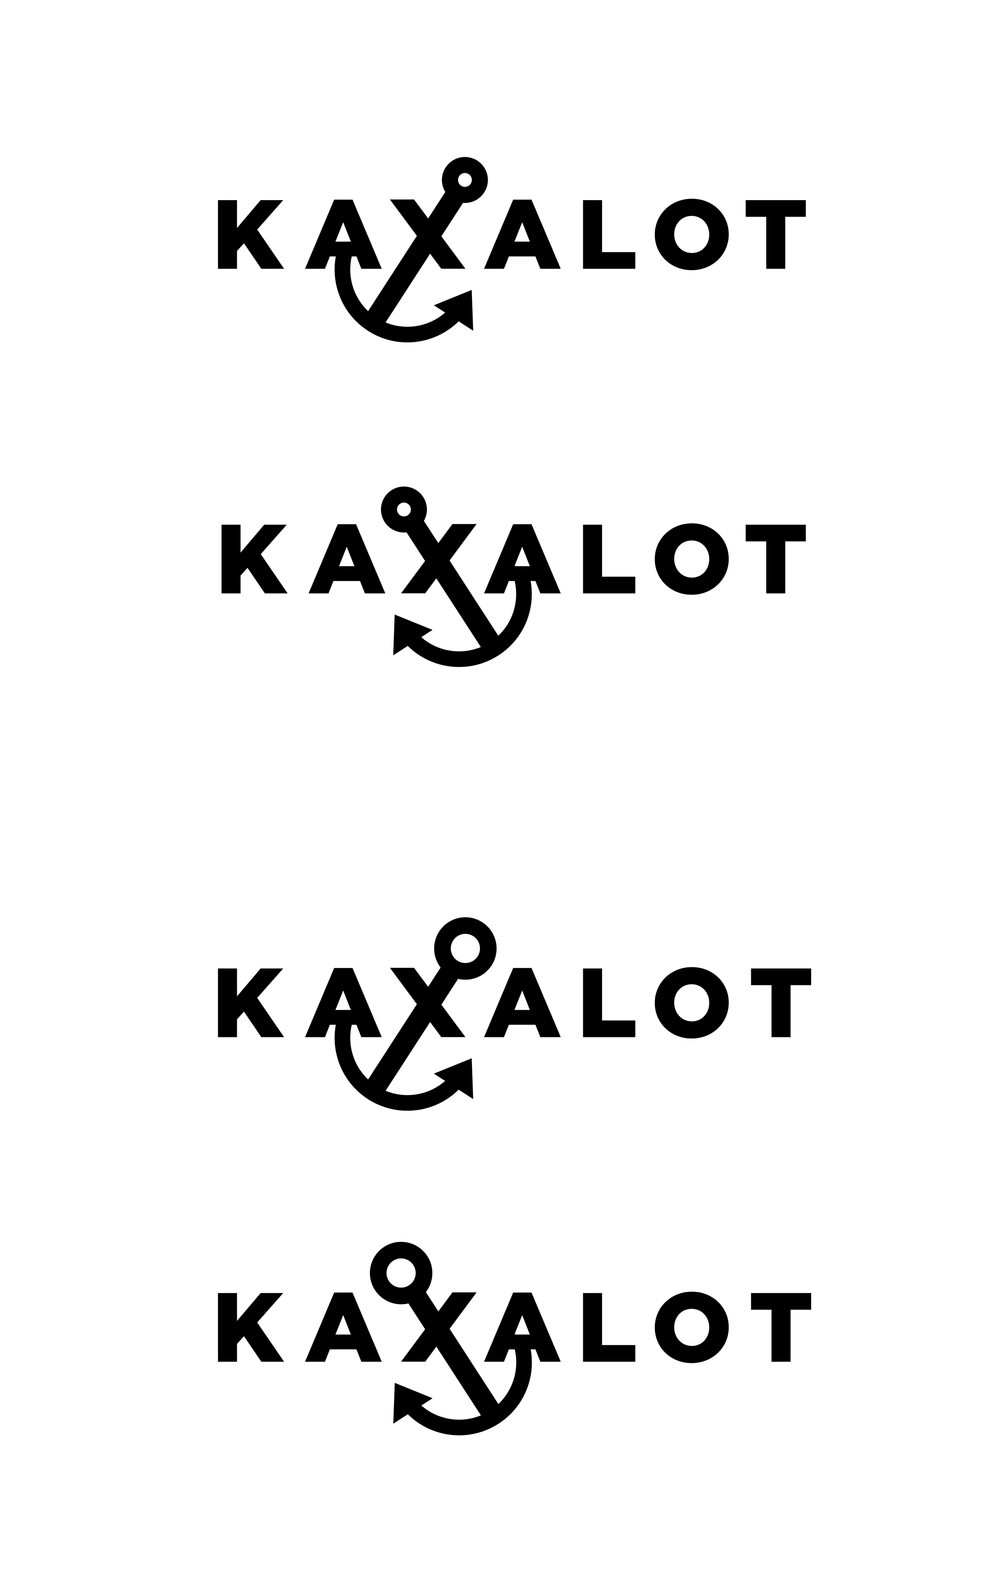 Kaxalot X iteration.png